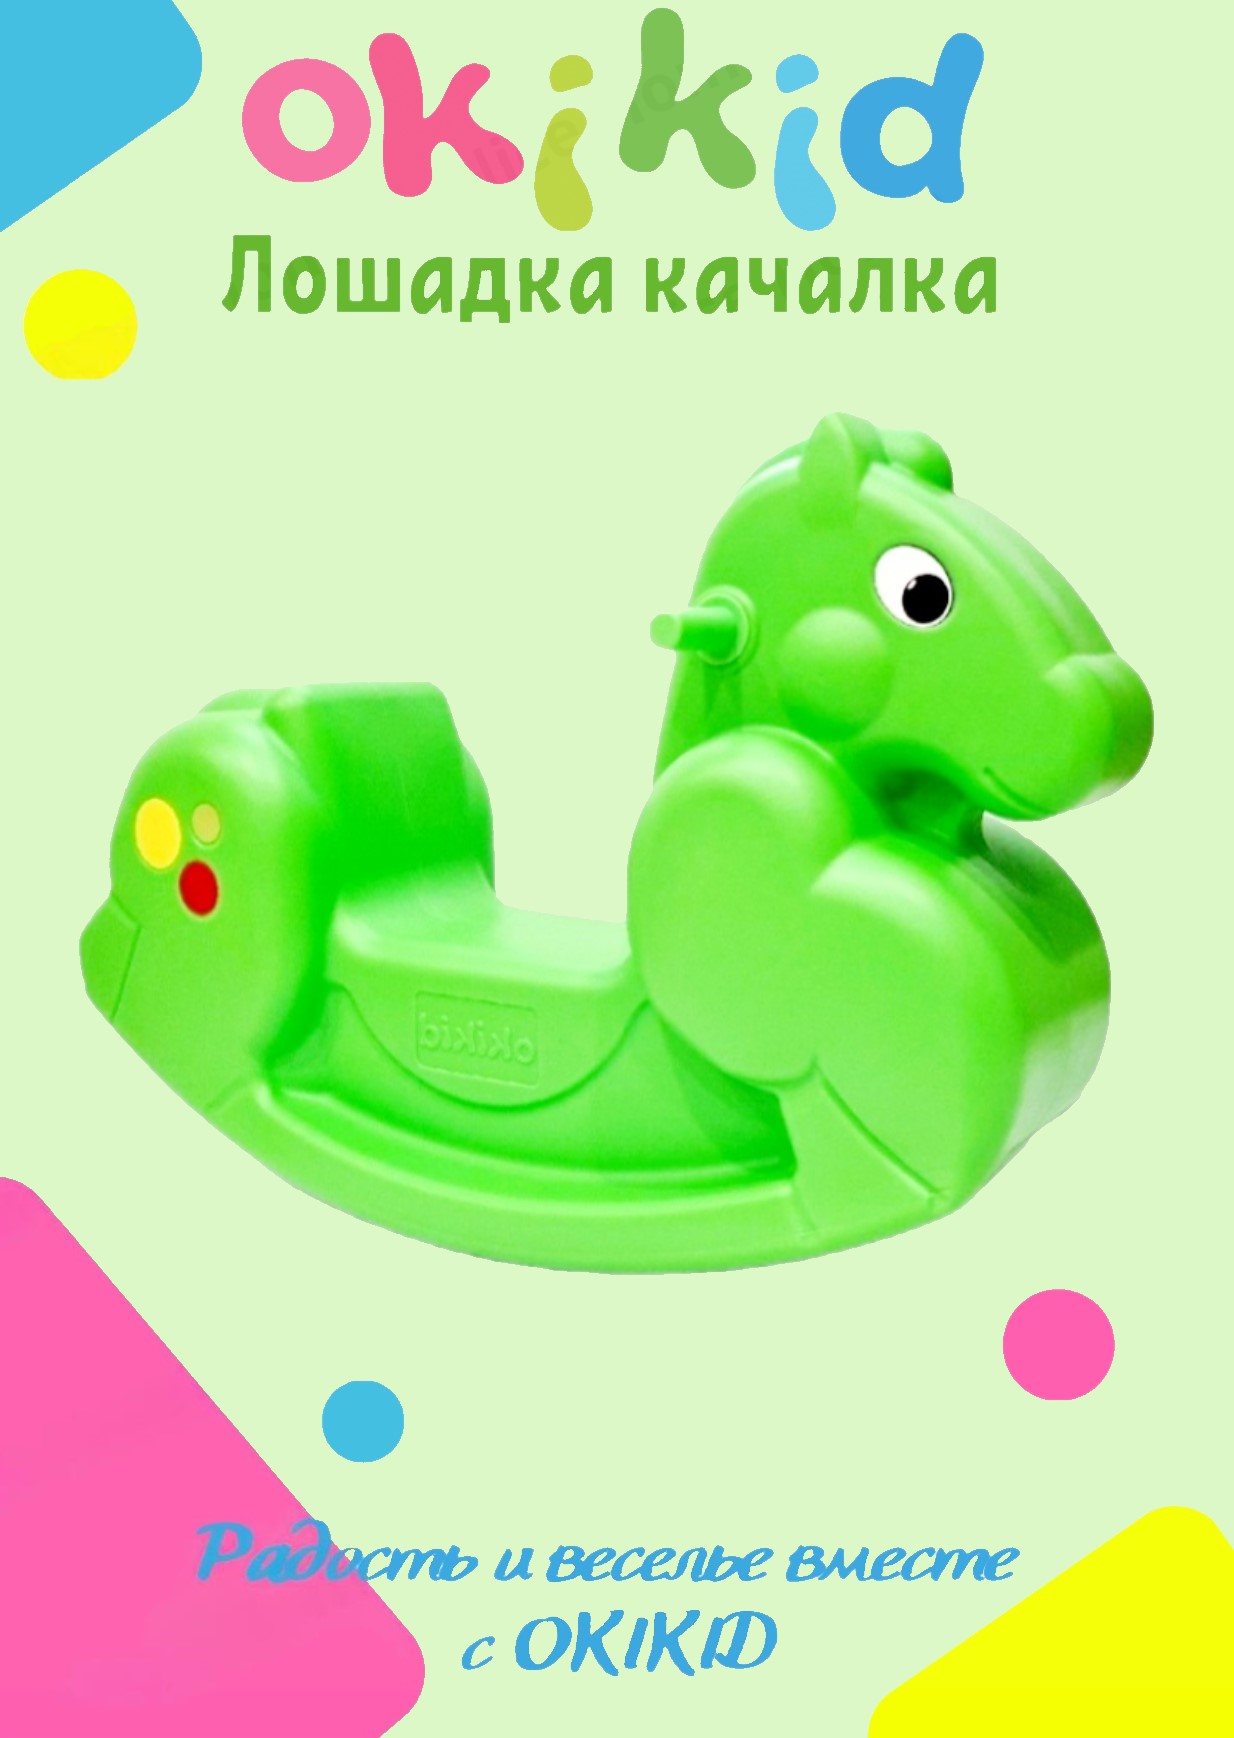 Качалка лошадка Okikid Т3-3-012-MM детская пластиковая, качели детские салатовая игрушка кольцо плавающее большое зооник 24 5 см пластикат салатовая